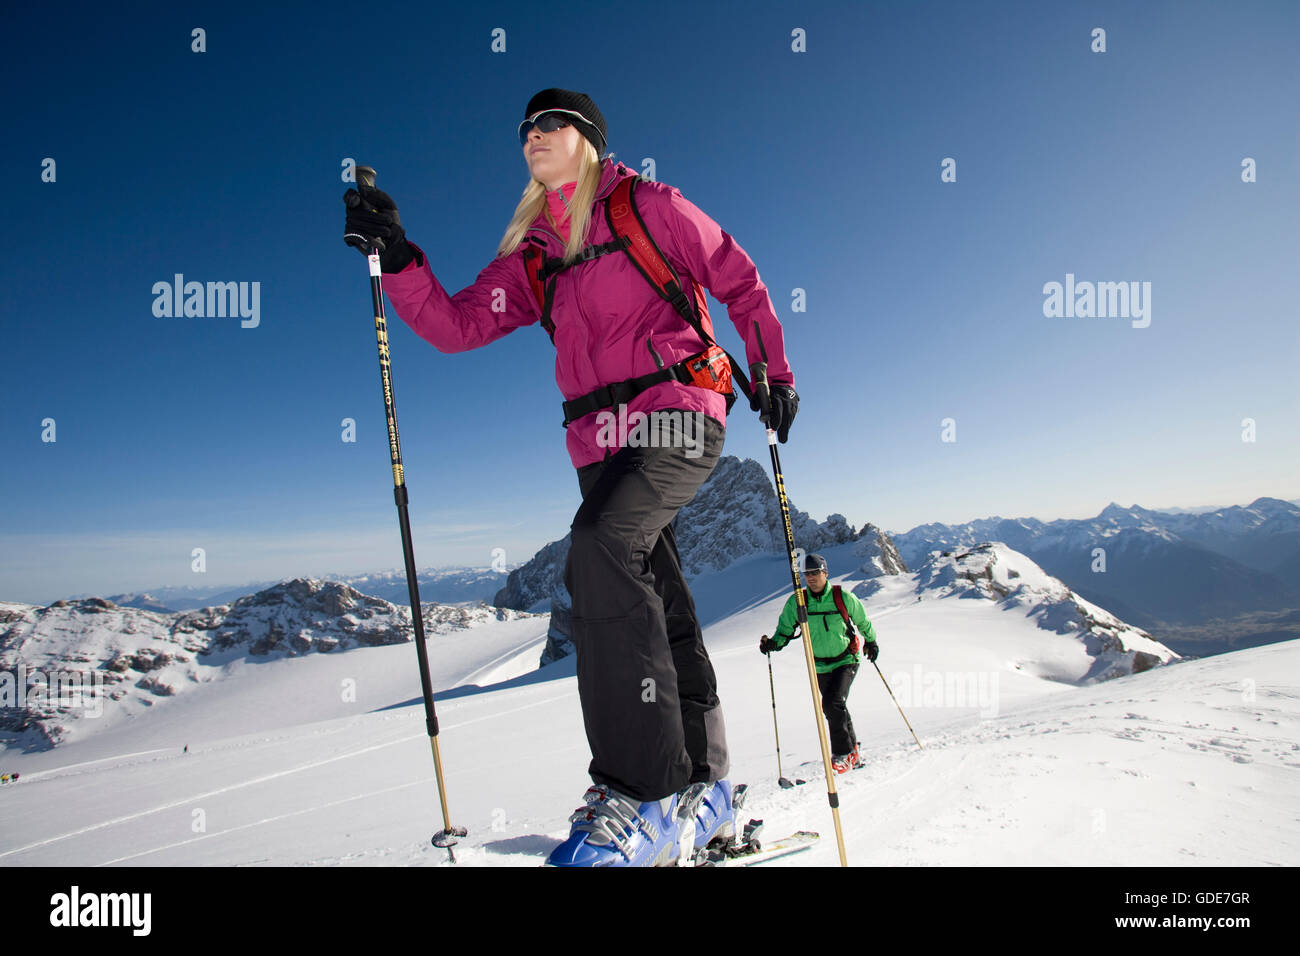 Ski tour,man,woman,couple,winter,sport,Dachstein,Styria,Austria,mountains Stock Photo